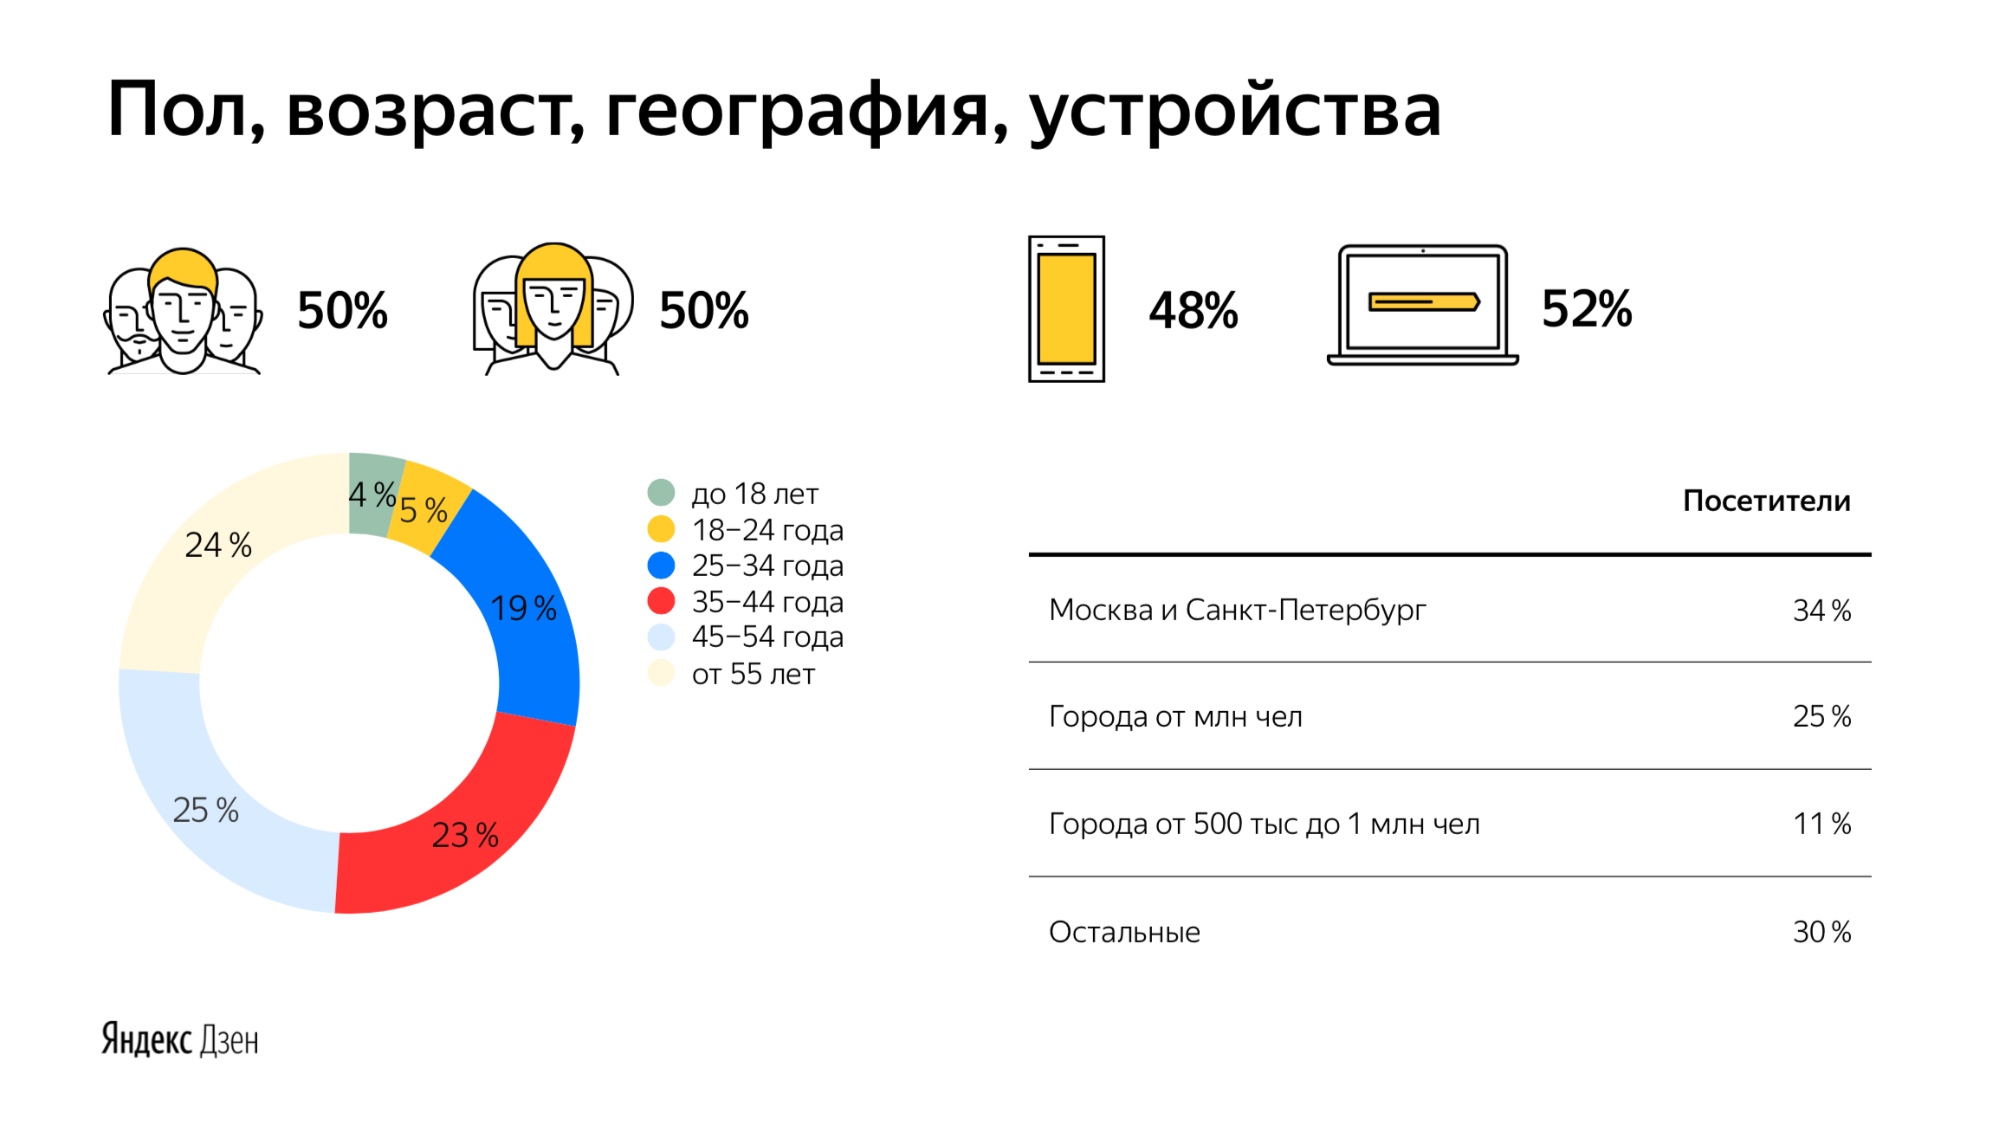 Как брендам таргетироваться в Яндекс Дзене - данные об аудитории